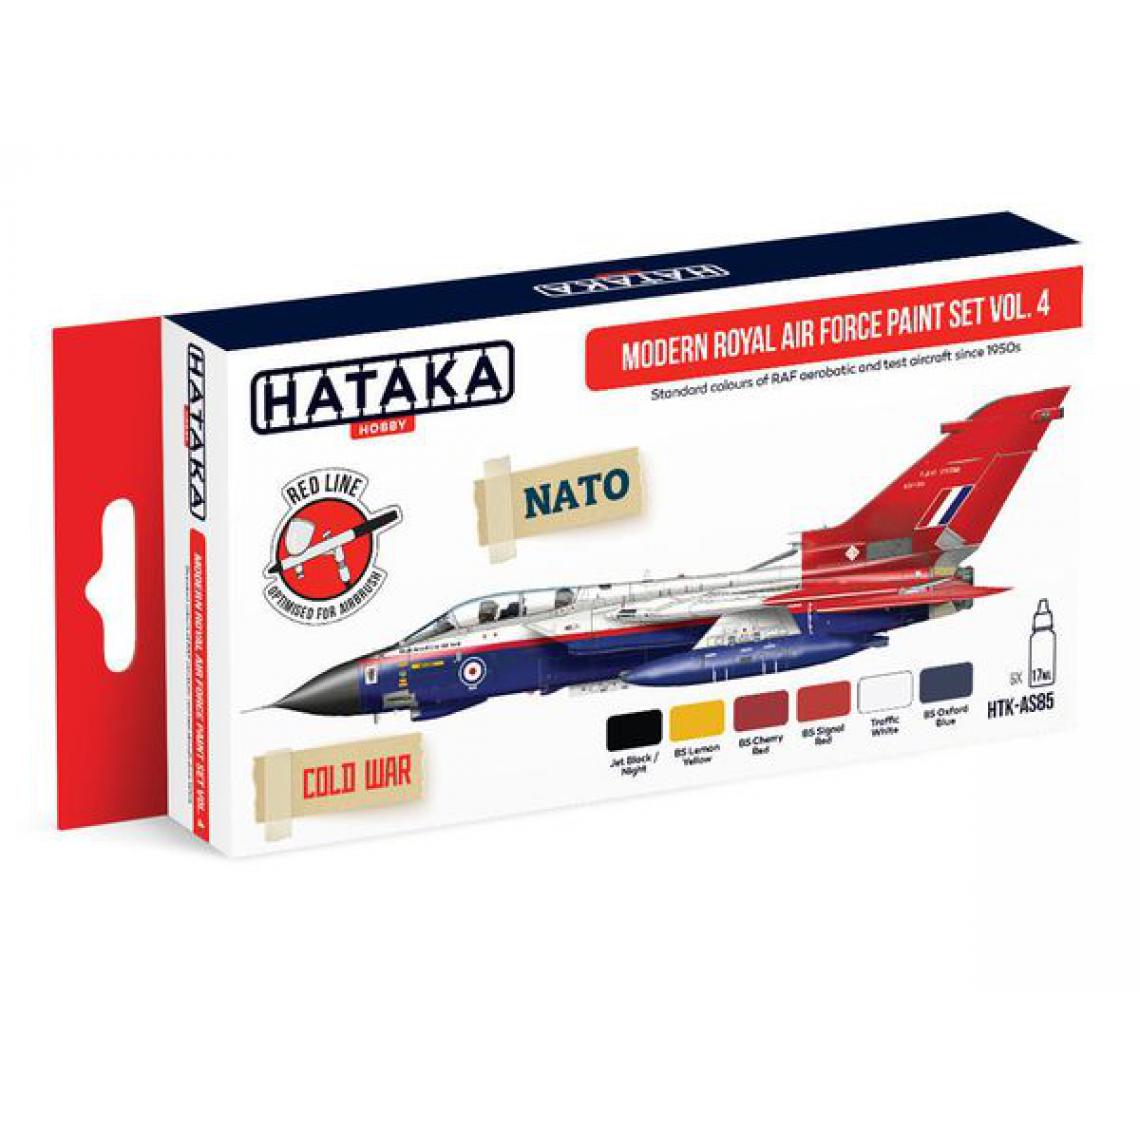 Hataka - Red Line Set (6 pcs) Modern Royal Air Force paint set vol. 4 - HATAKA - Accessoires et pièces